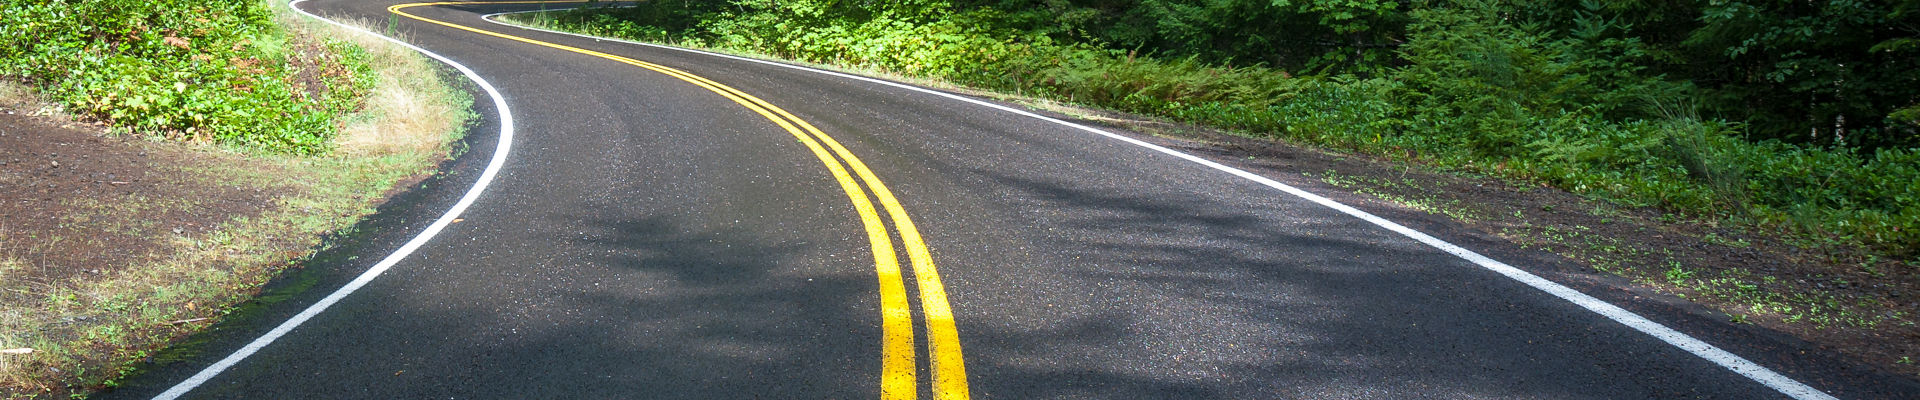 소나무 숲 가운데에 노란색 도로 표시가 있는 구불구불한 검은색 아스팔트 도로